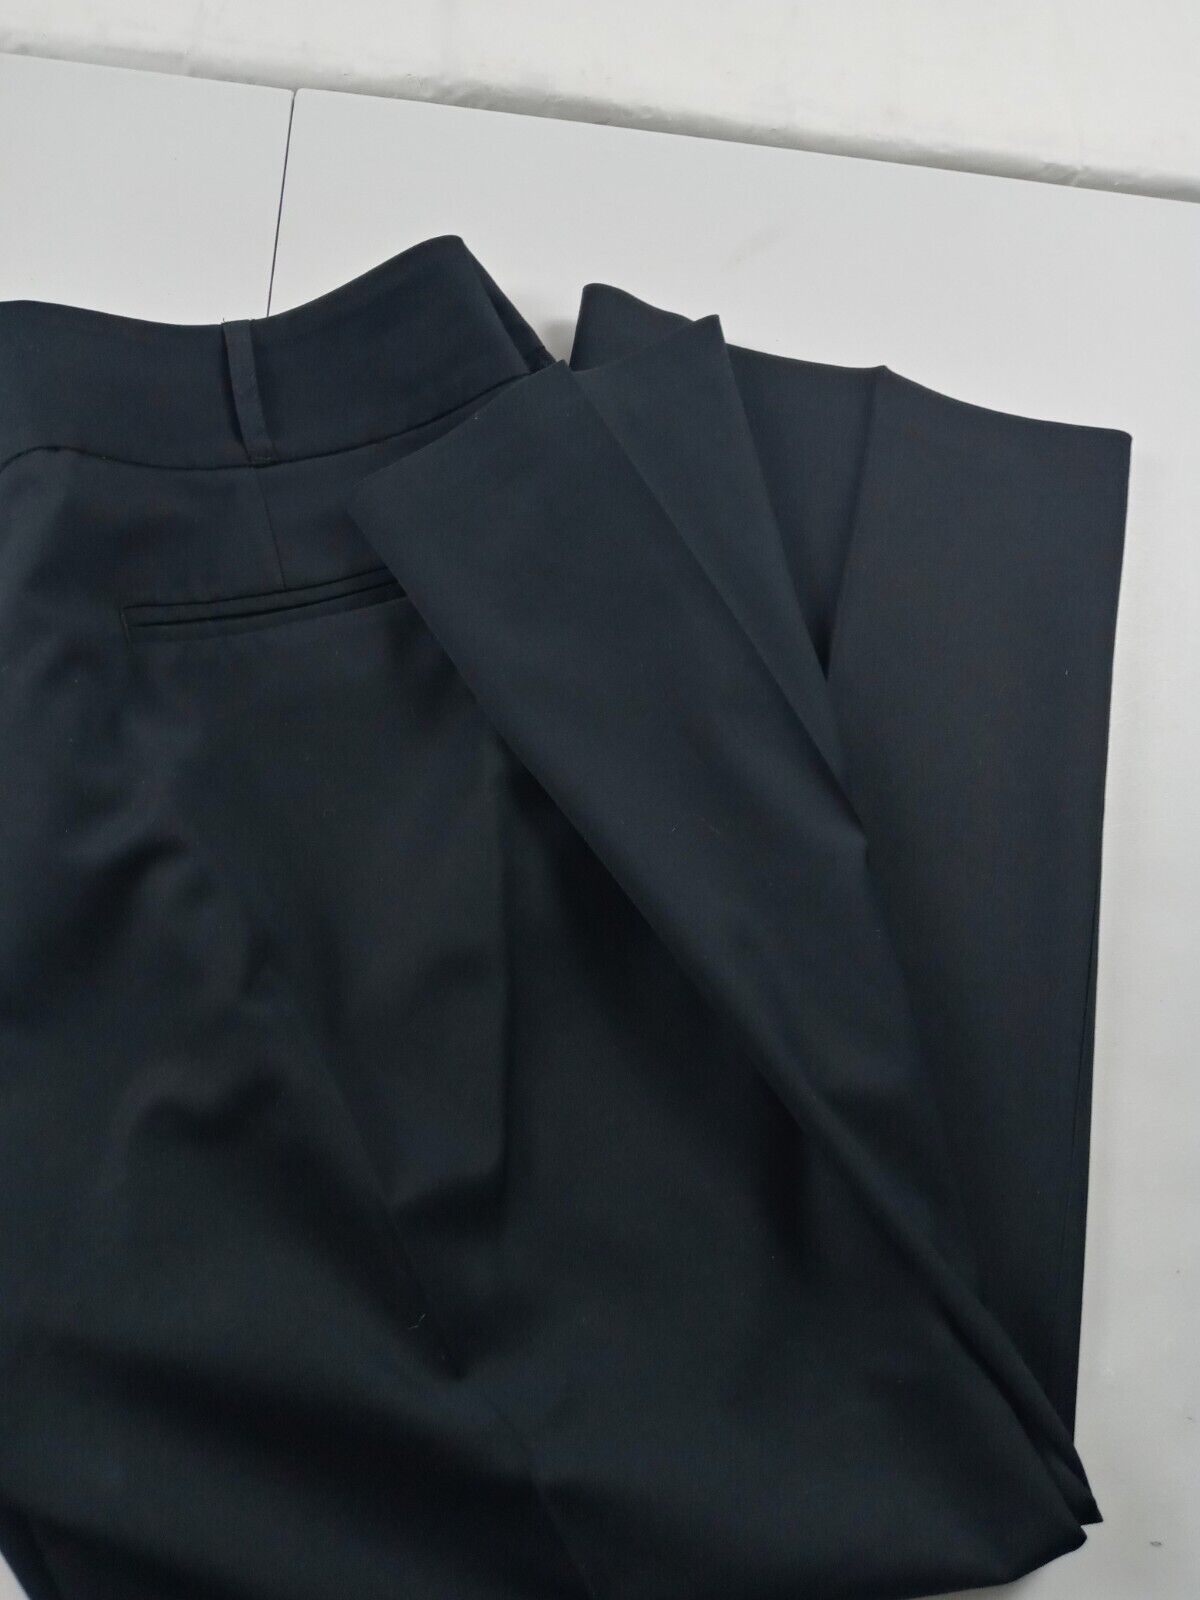 Chicos Pants Women Size 3 Short Black Flat Front … - image 14